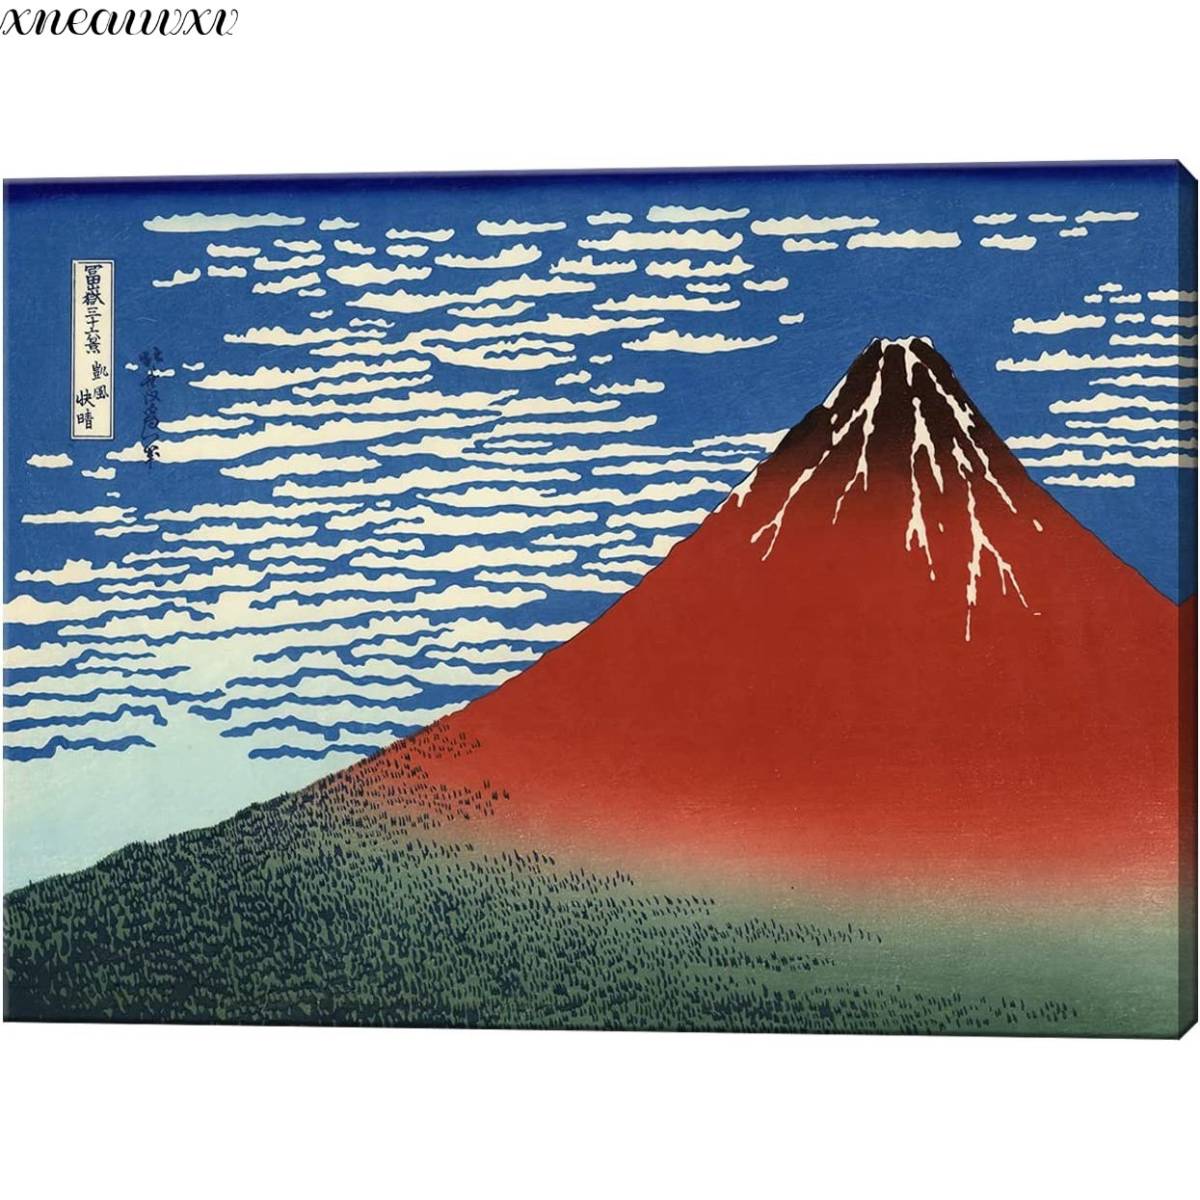 Katsushika Hokusai Kunsttafel Sechsunddreißig Ansichten des Berges Fuji Klarer sonniger Wind Reproduktion Spektakuläre Aussichtskunst Japanische Dekoration Klassische Naturlandschaft Meeresmalerei Innenkunst, Malerei, Ukiyo-e, drucken, Bild eines berühmten Ortes